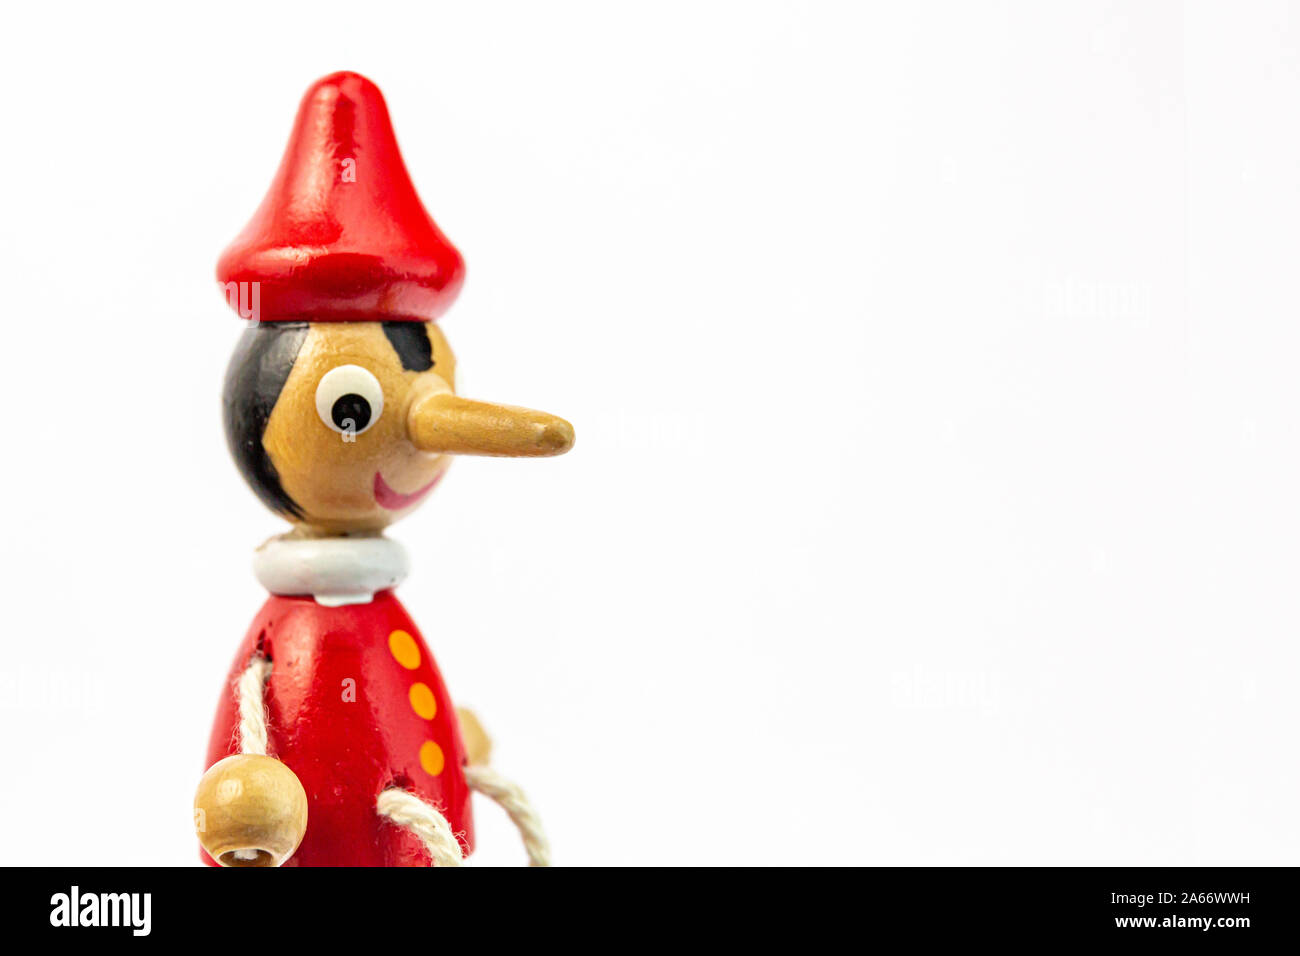 Le Pinocchio marionnette bec long qui raconte se trouve isolé sur un fond blanc. Le nez de Pinocchio. Banque D'Images